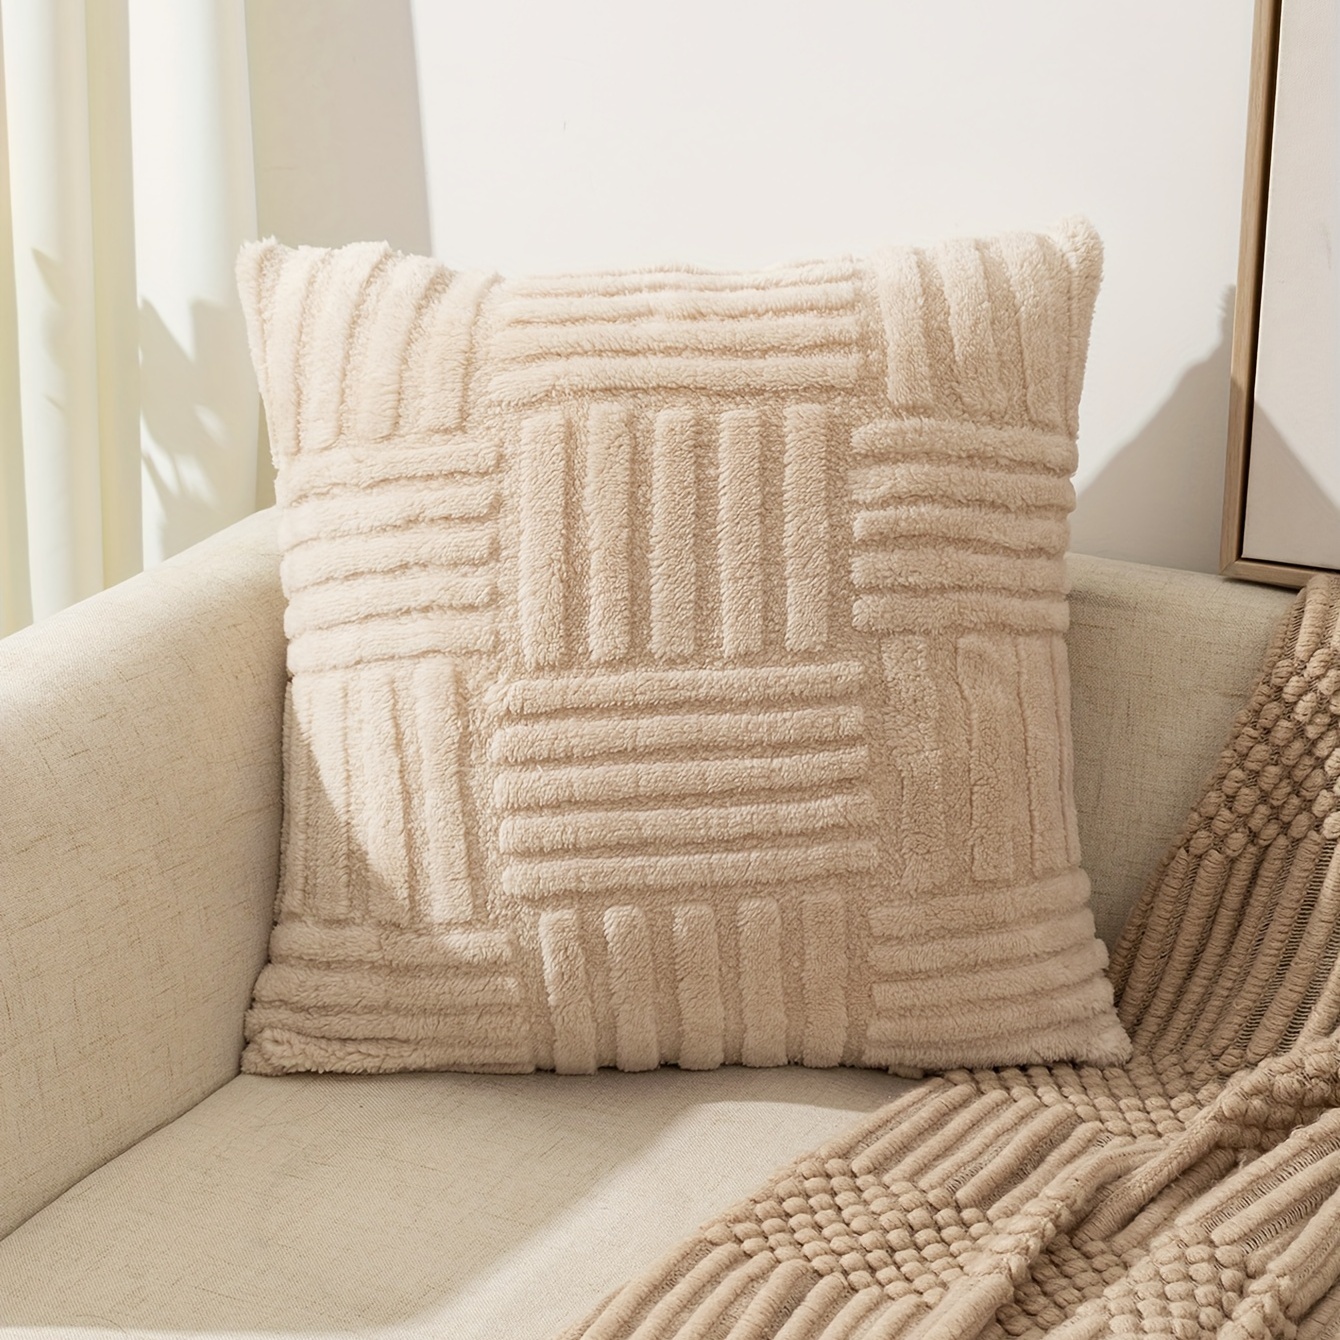 Decorative Velvet Stuffed Cushion Cover For Living Room, Bedroom